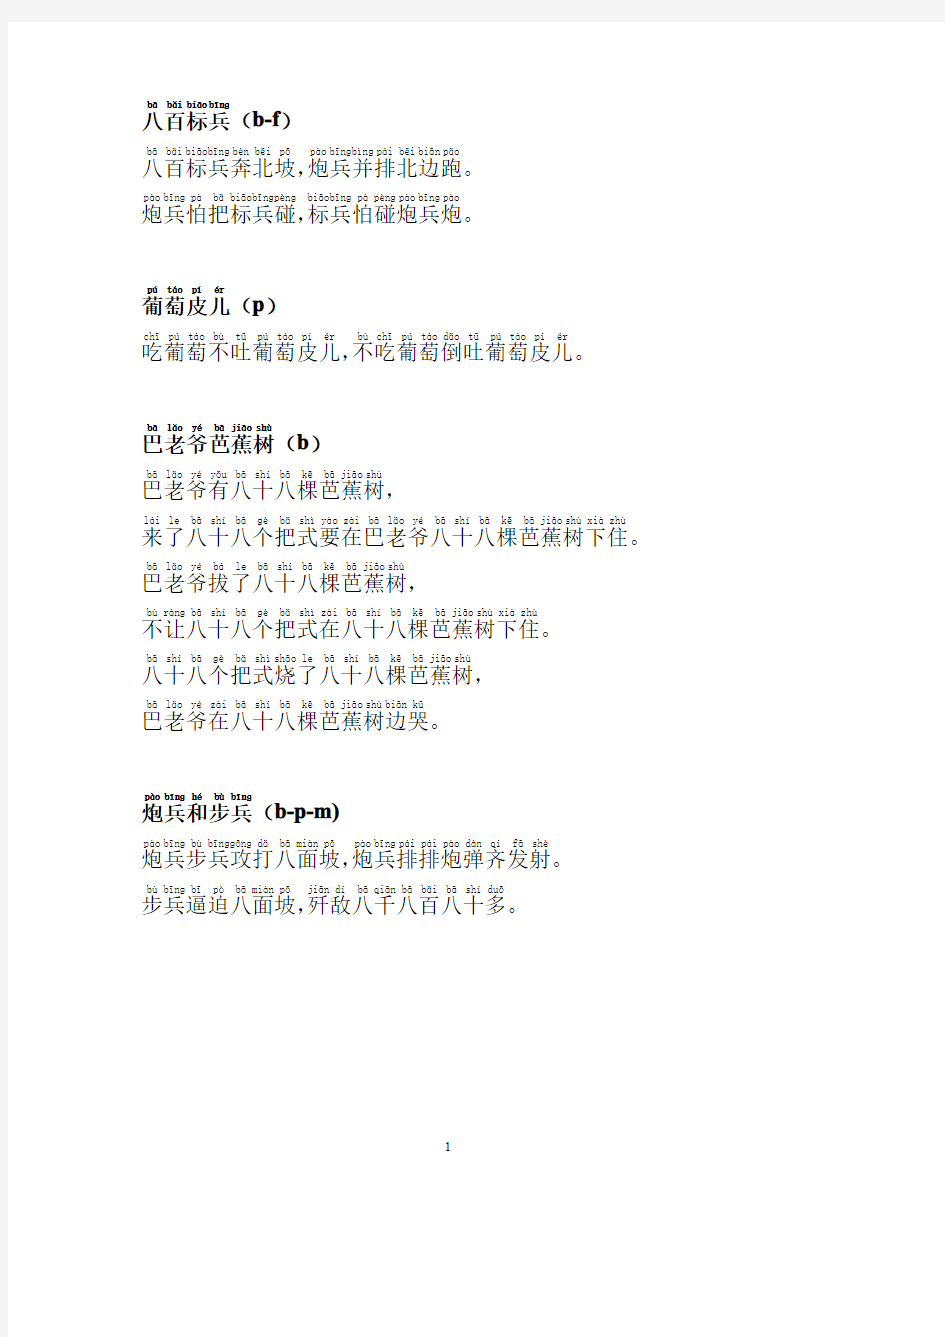 普通话绕口令练习 拼音打印版